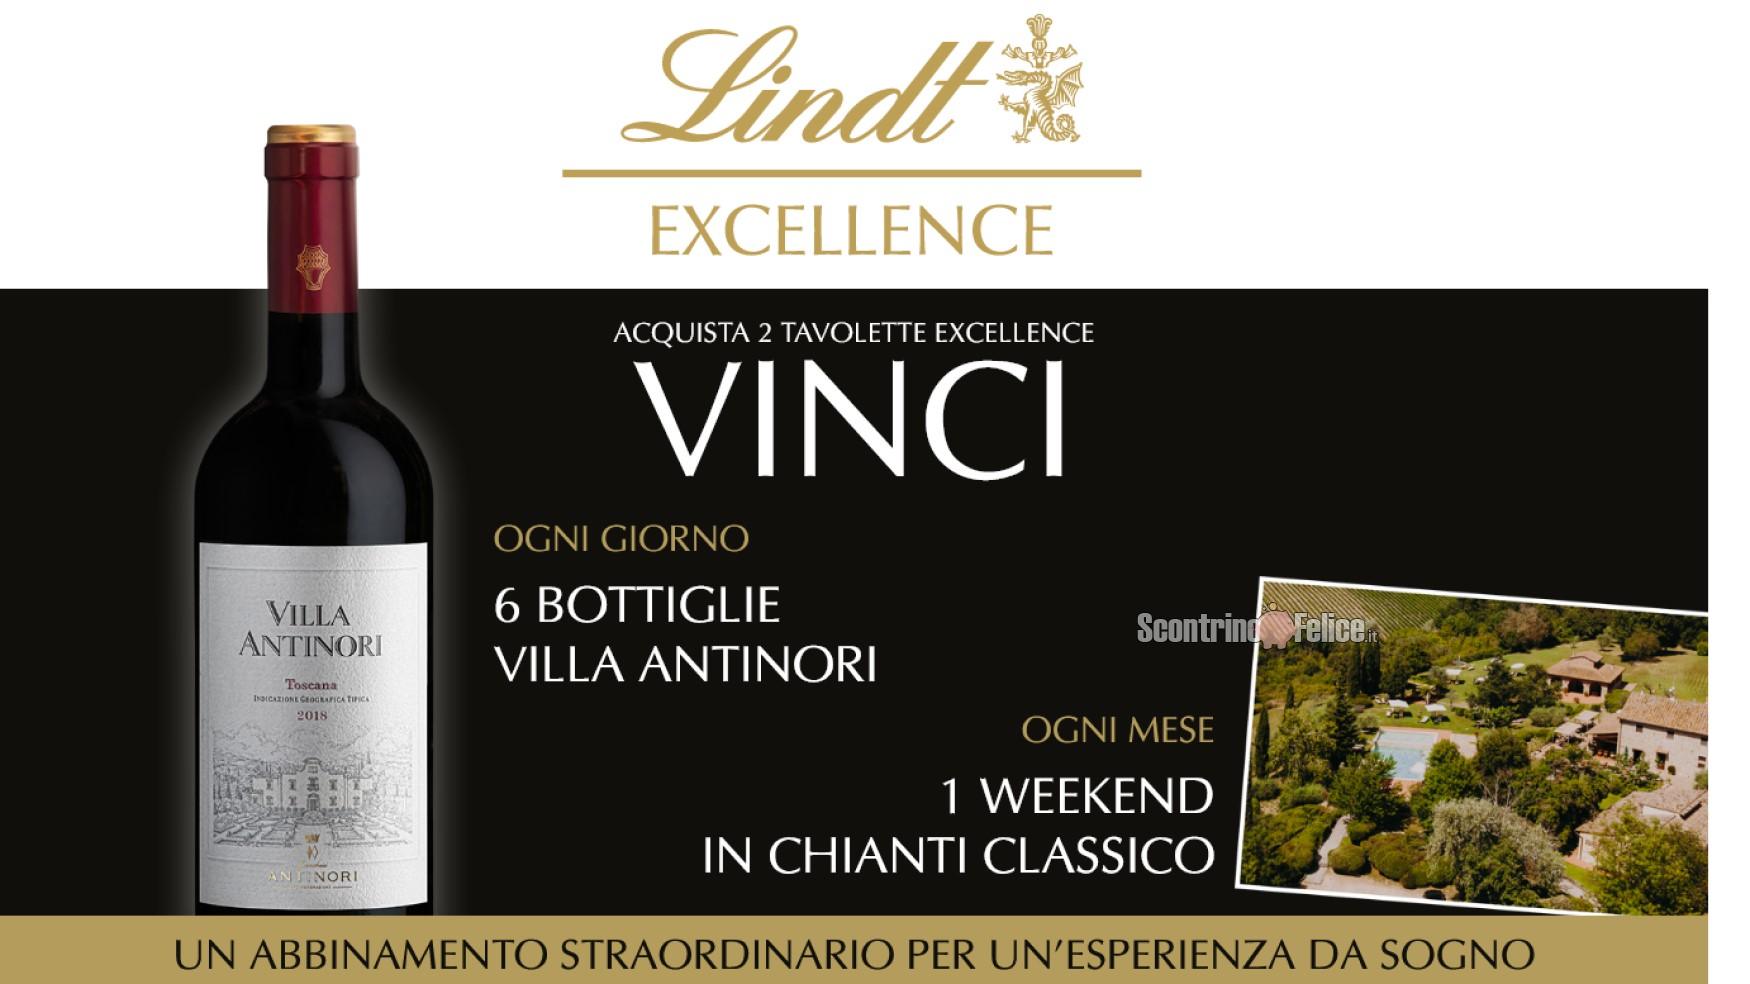 Concorso Lindt con Excellence vinci Villa Antinori vinci bottiglie di vino IGT e weekend in Chianti